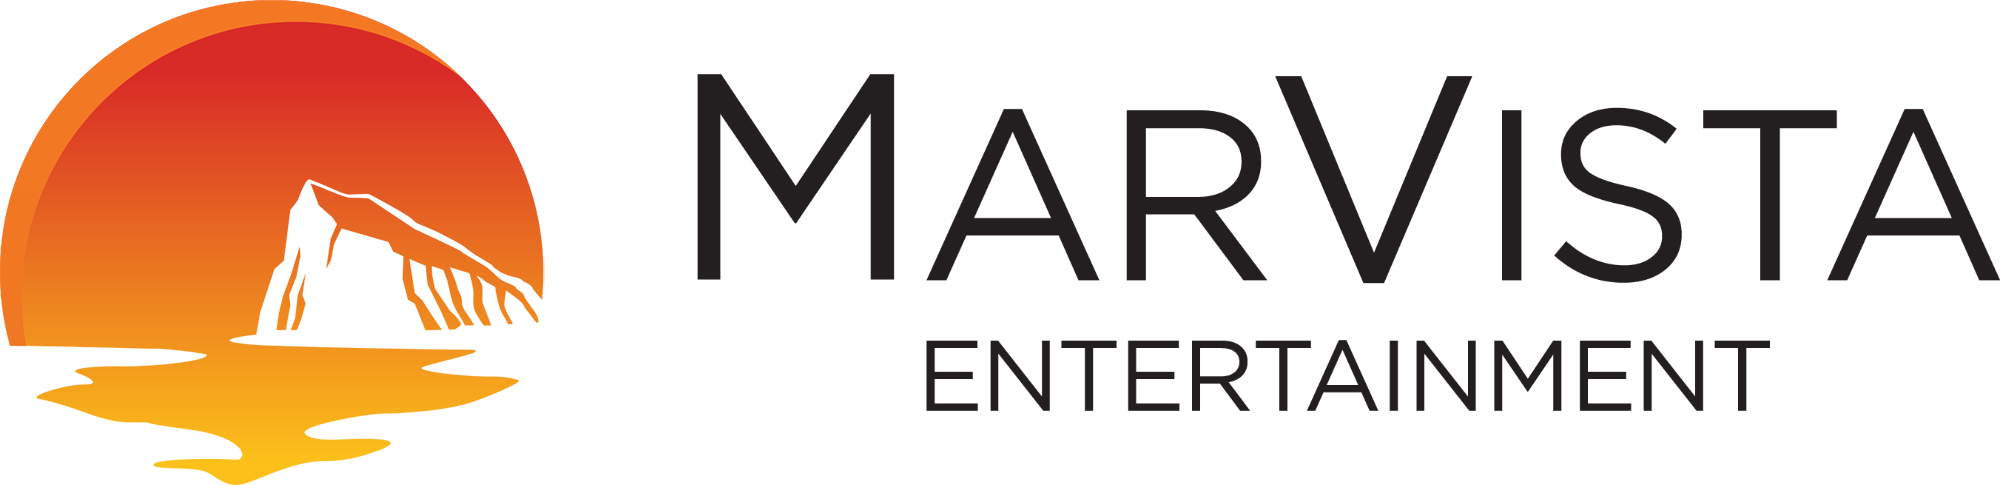 MarVista Entertainment - company